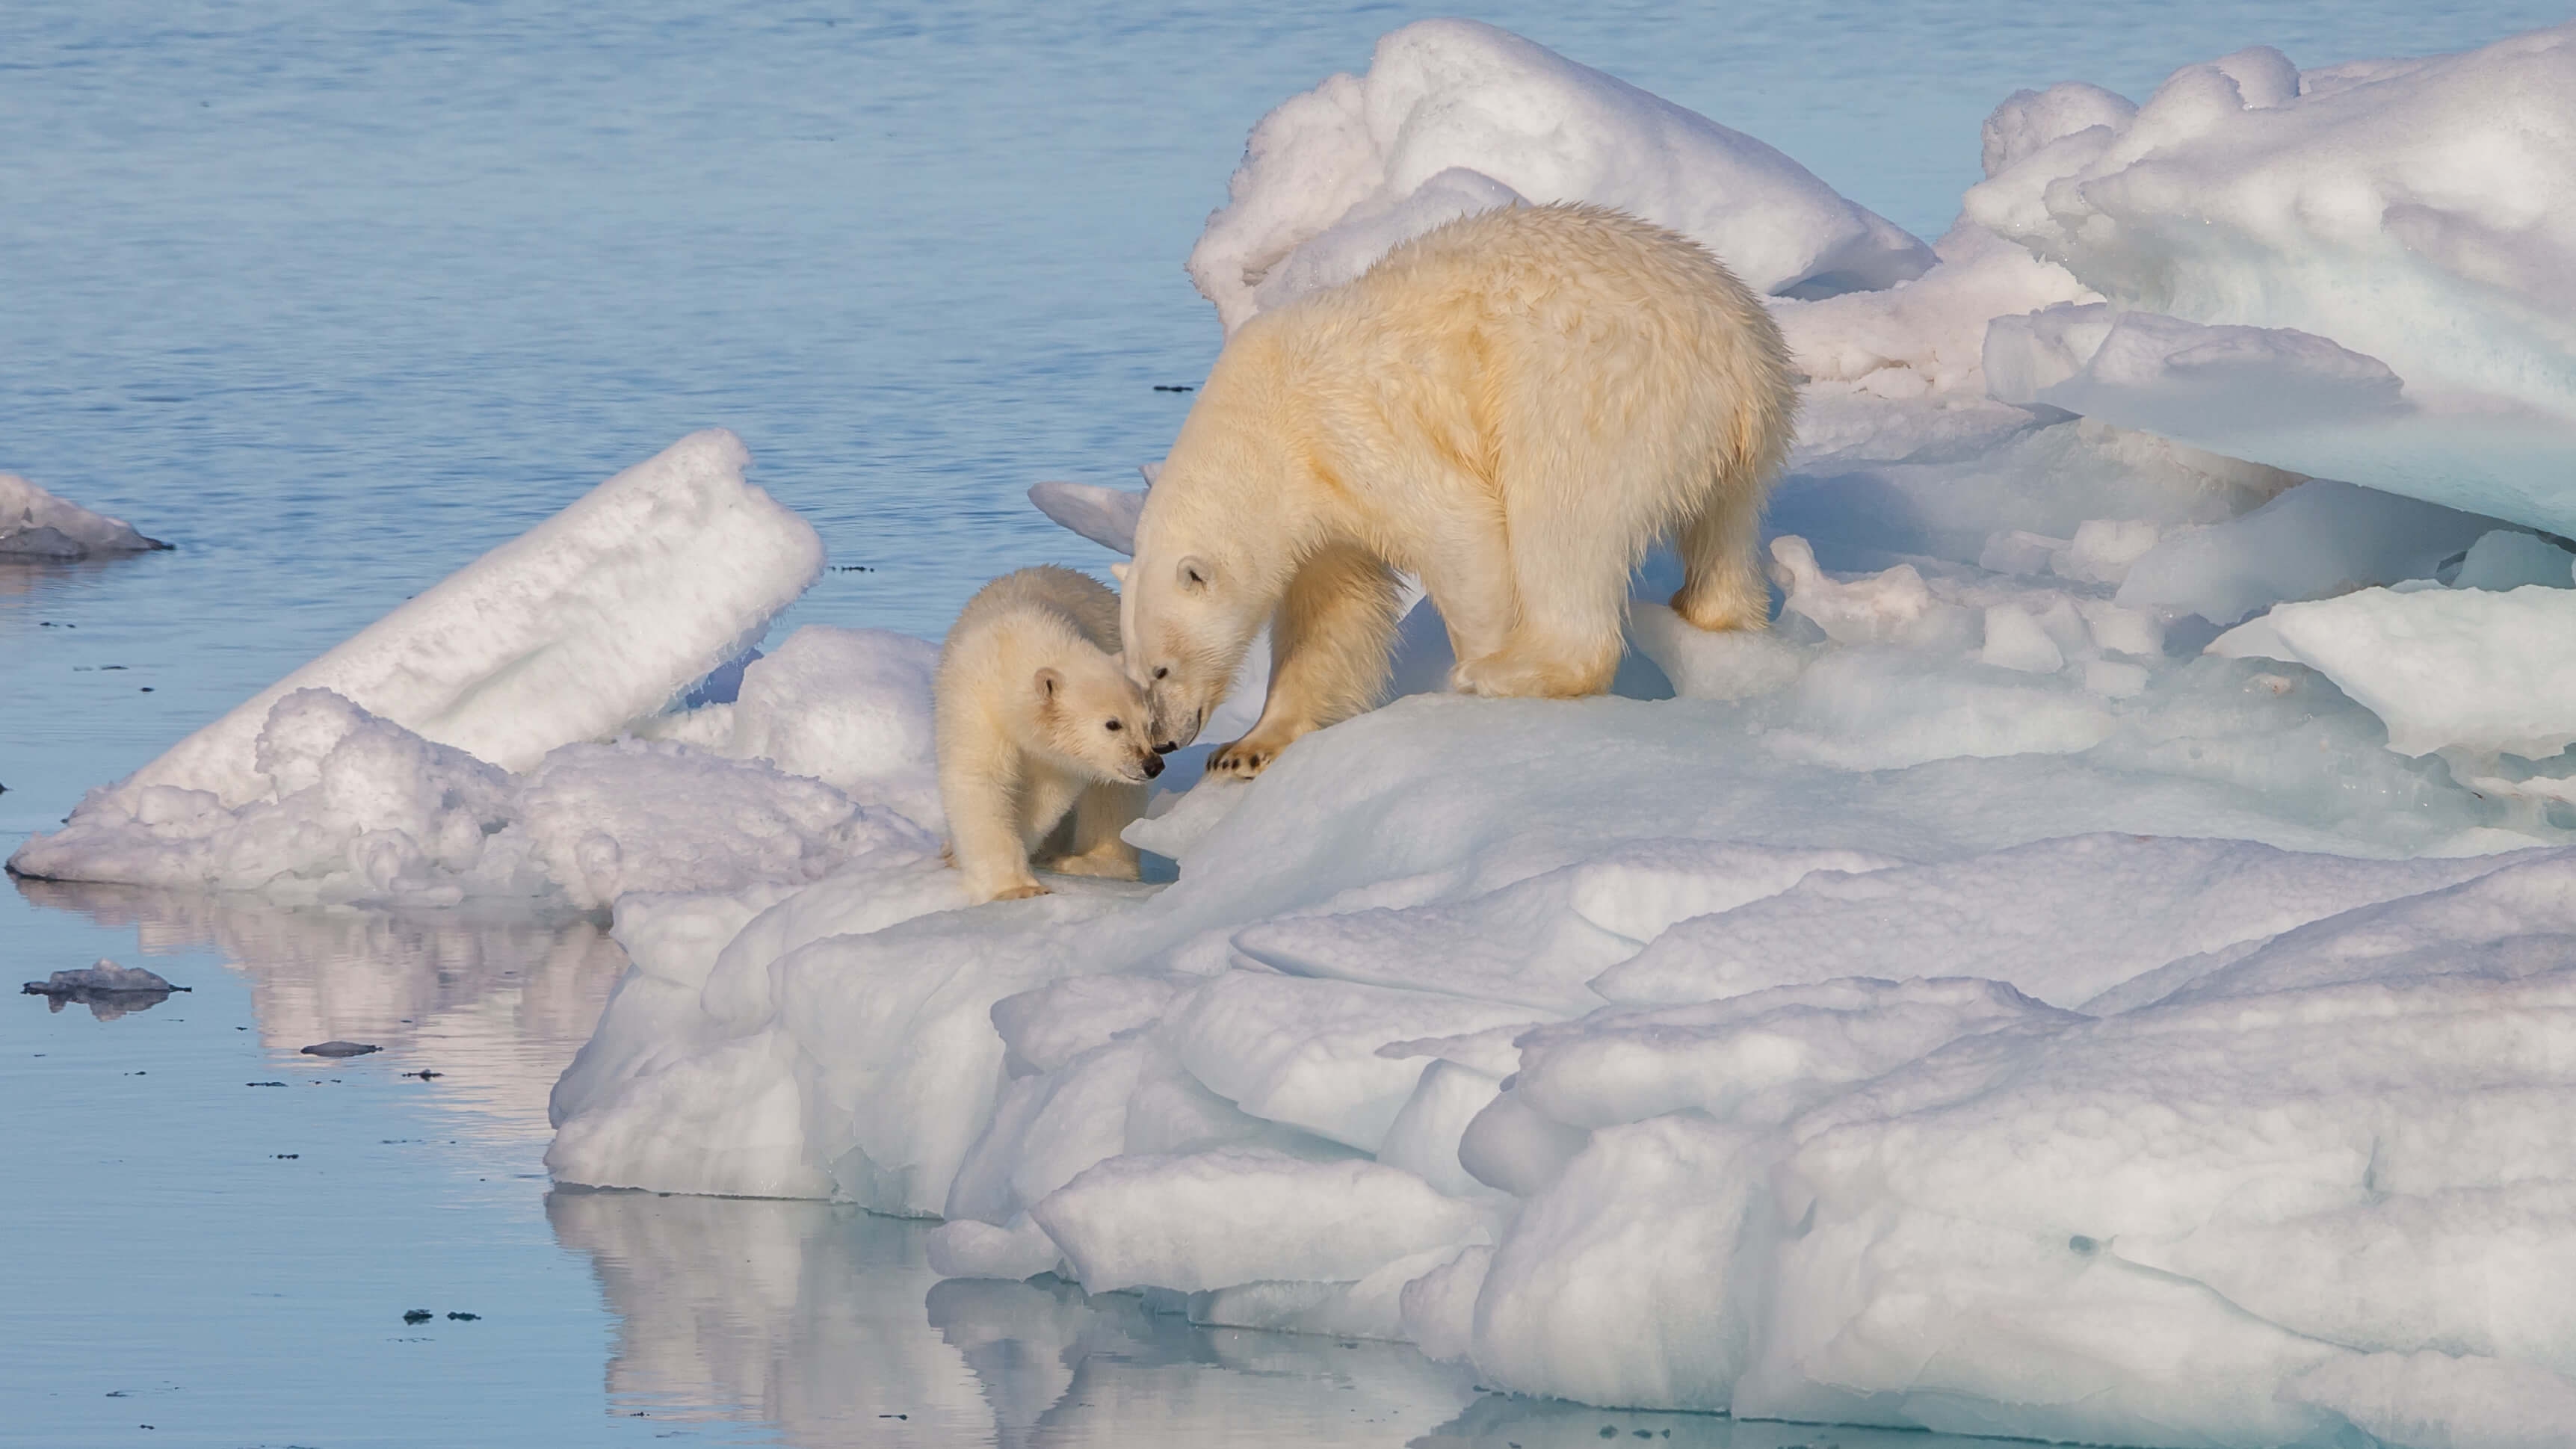 ¿Quieres salvar a los osos polares? Apaga el motor y coge la bici